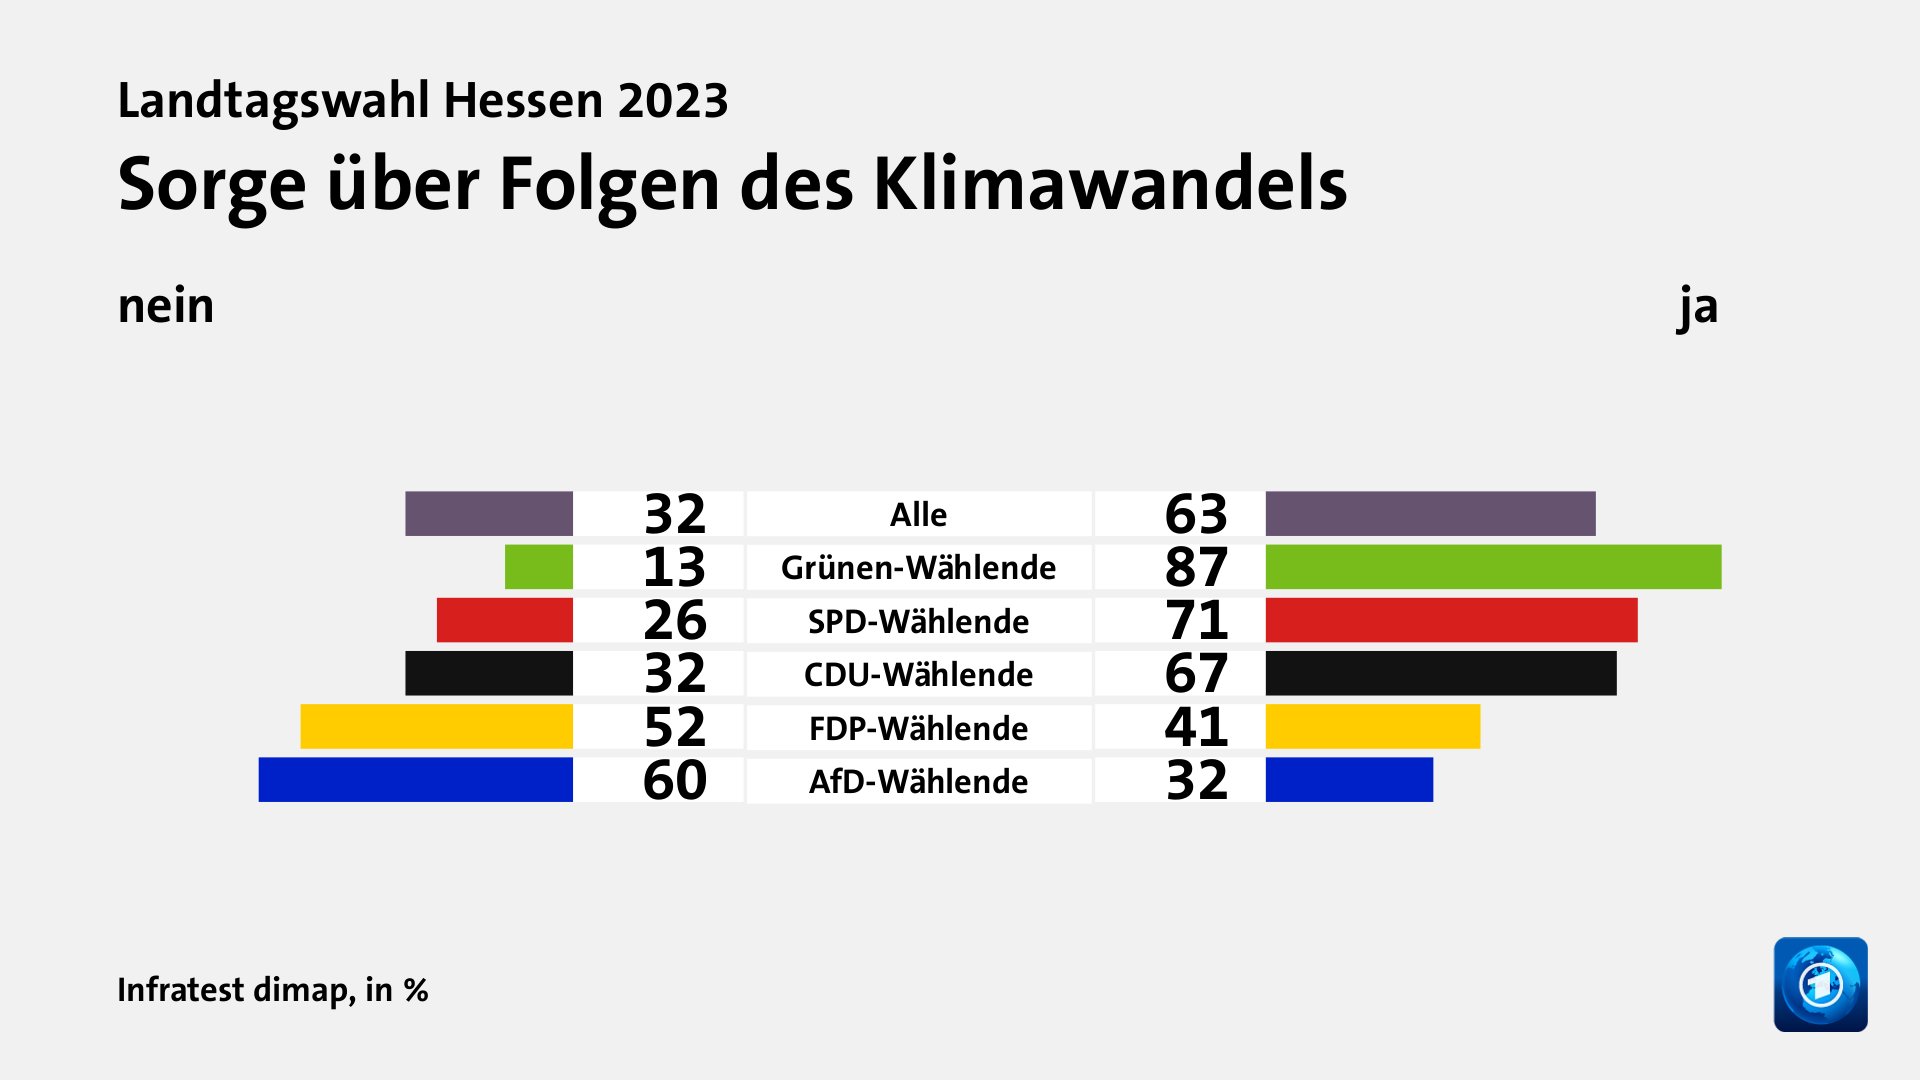 Sorge über Folgen des Klimawandels (in %) Alle: nein 32, ja 63; Grünen-Wählende: nein 13, ja 87; SPD-Wählende: nein 26, ja 71; CDU-Wählende: nein 32, ja 67; FDP-Wählende: nein 52, ja 41; AfD-Wählende: nein 60, ja 32; Quelle: Infratest dimap